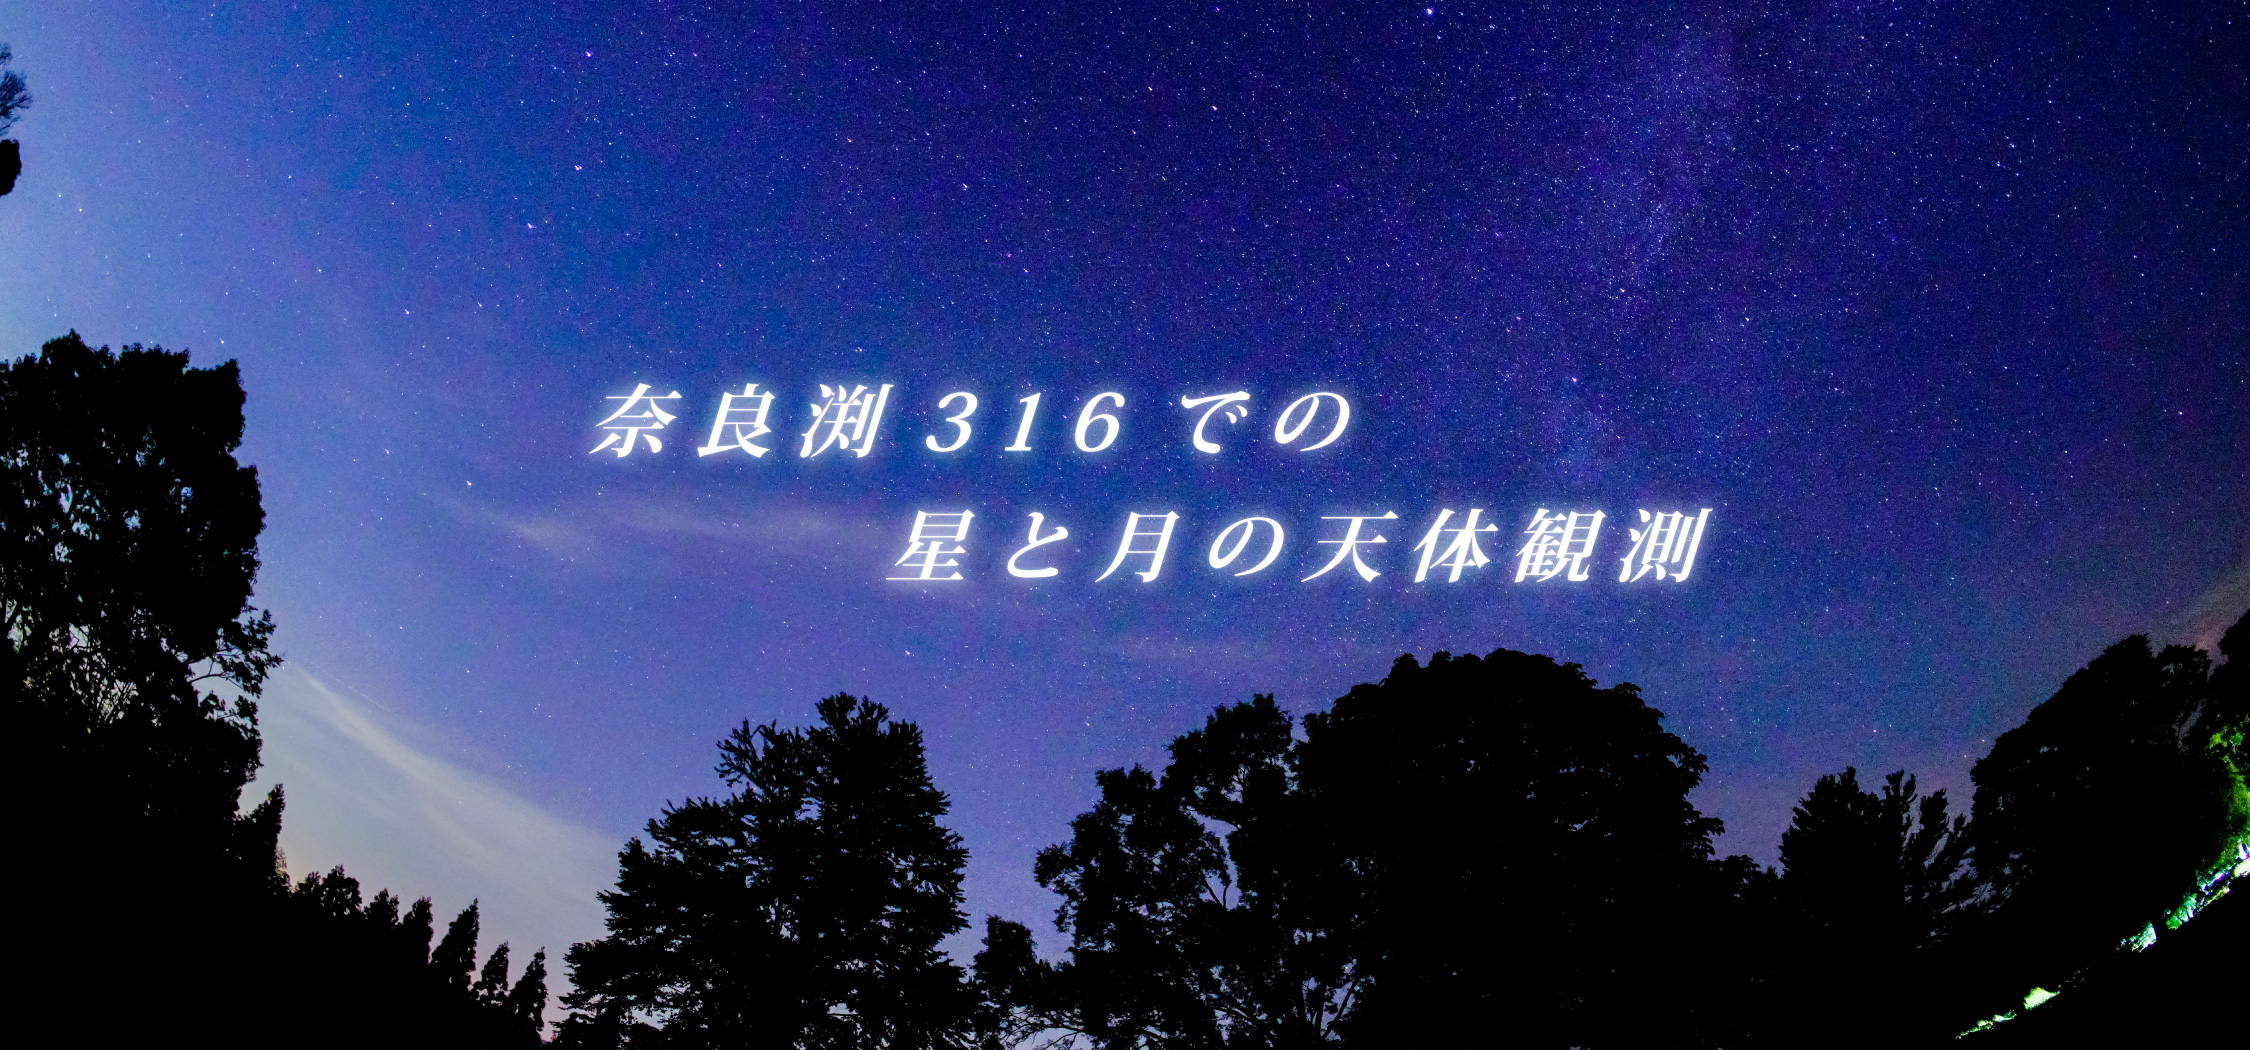 奈良渕316での星と月の天体観測